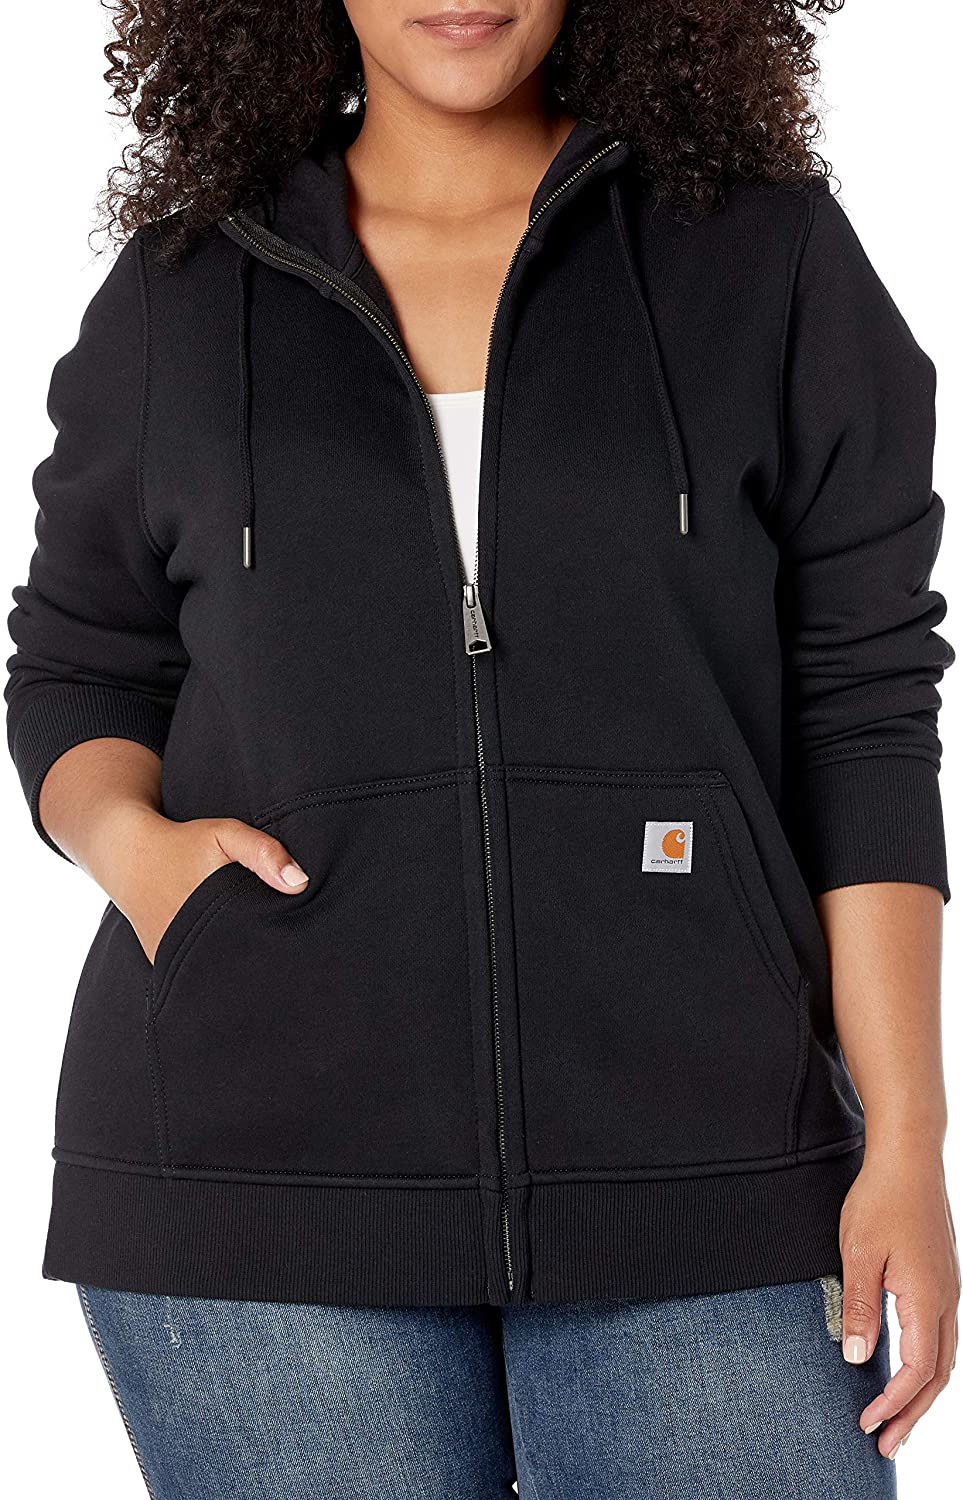 Carhartt Women's Clarksburg Full Zip Hoodie (Regular and Plus Sizes) | eBay